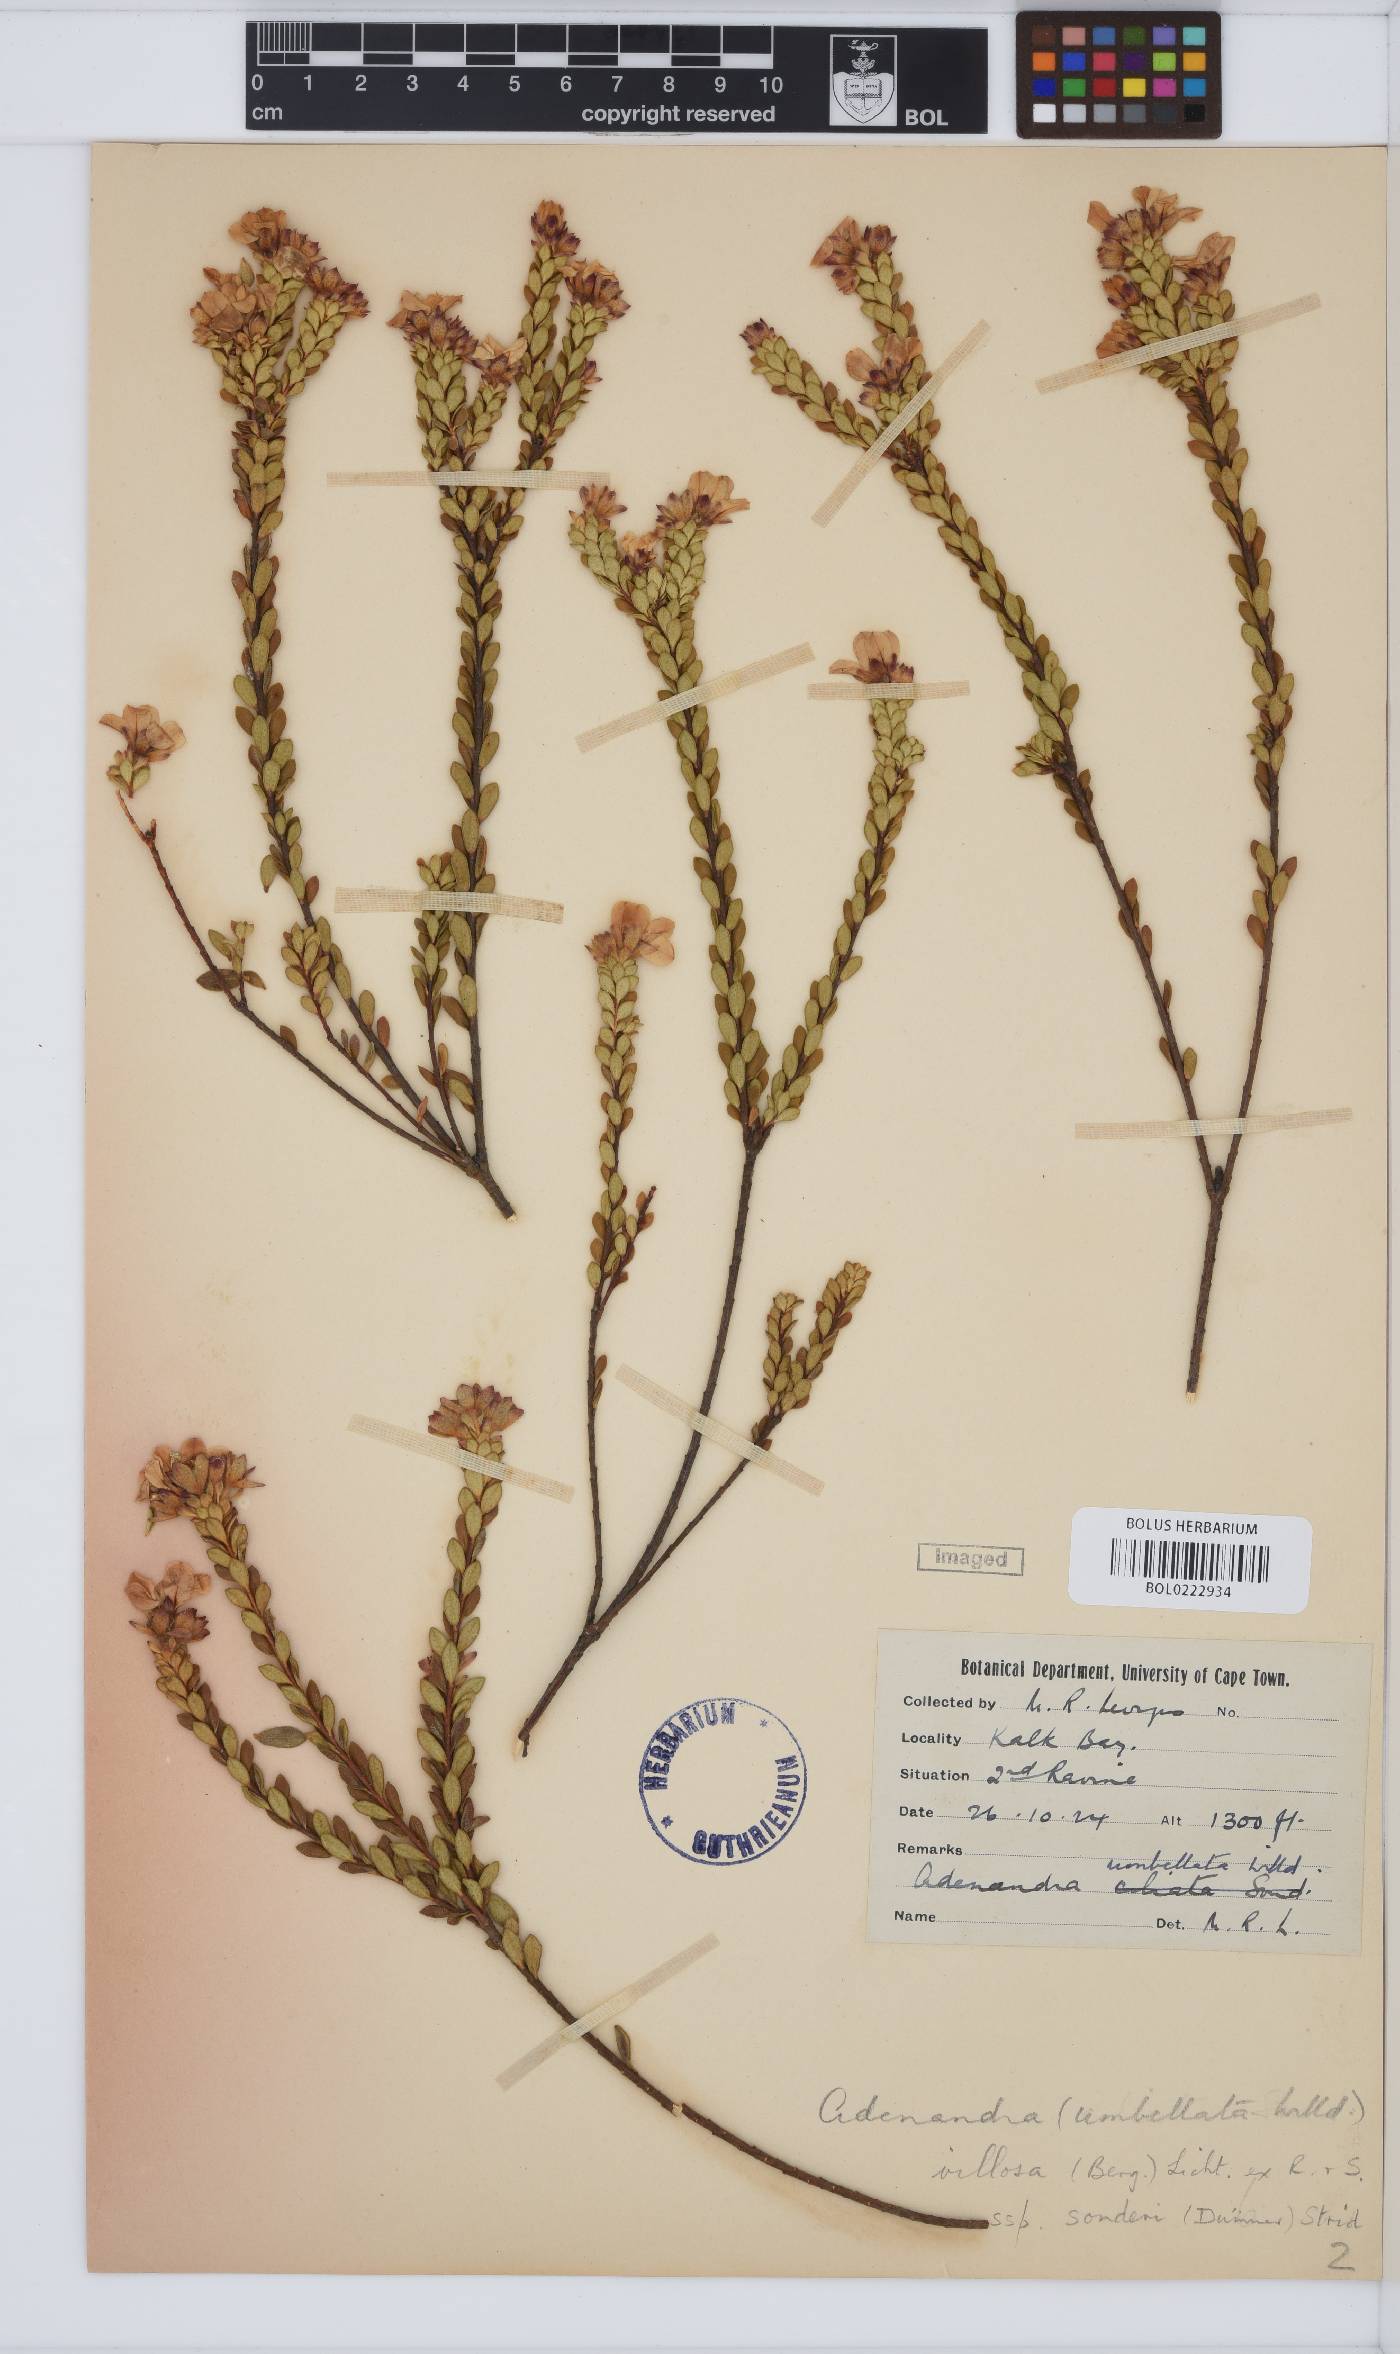 Adenandra villosa subsp. sonderi image